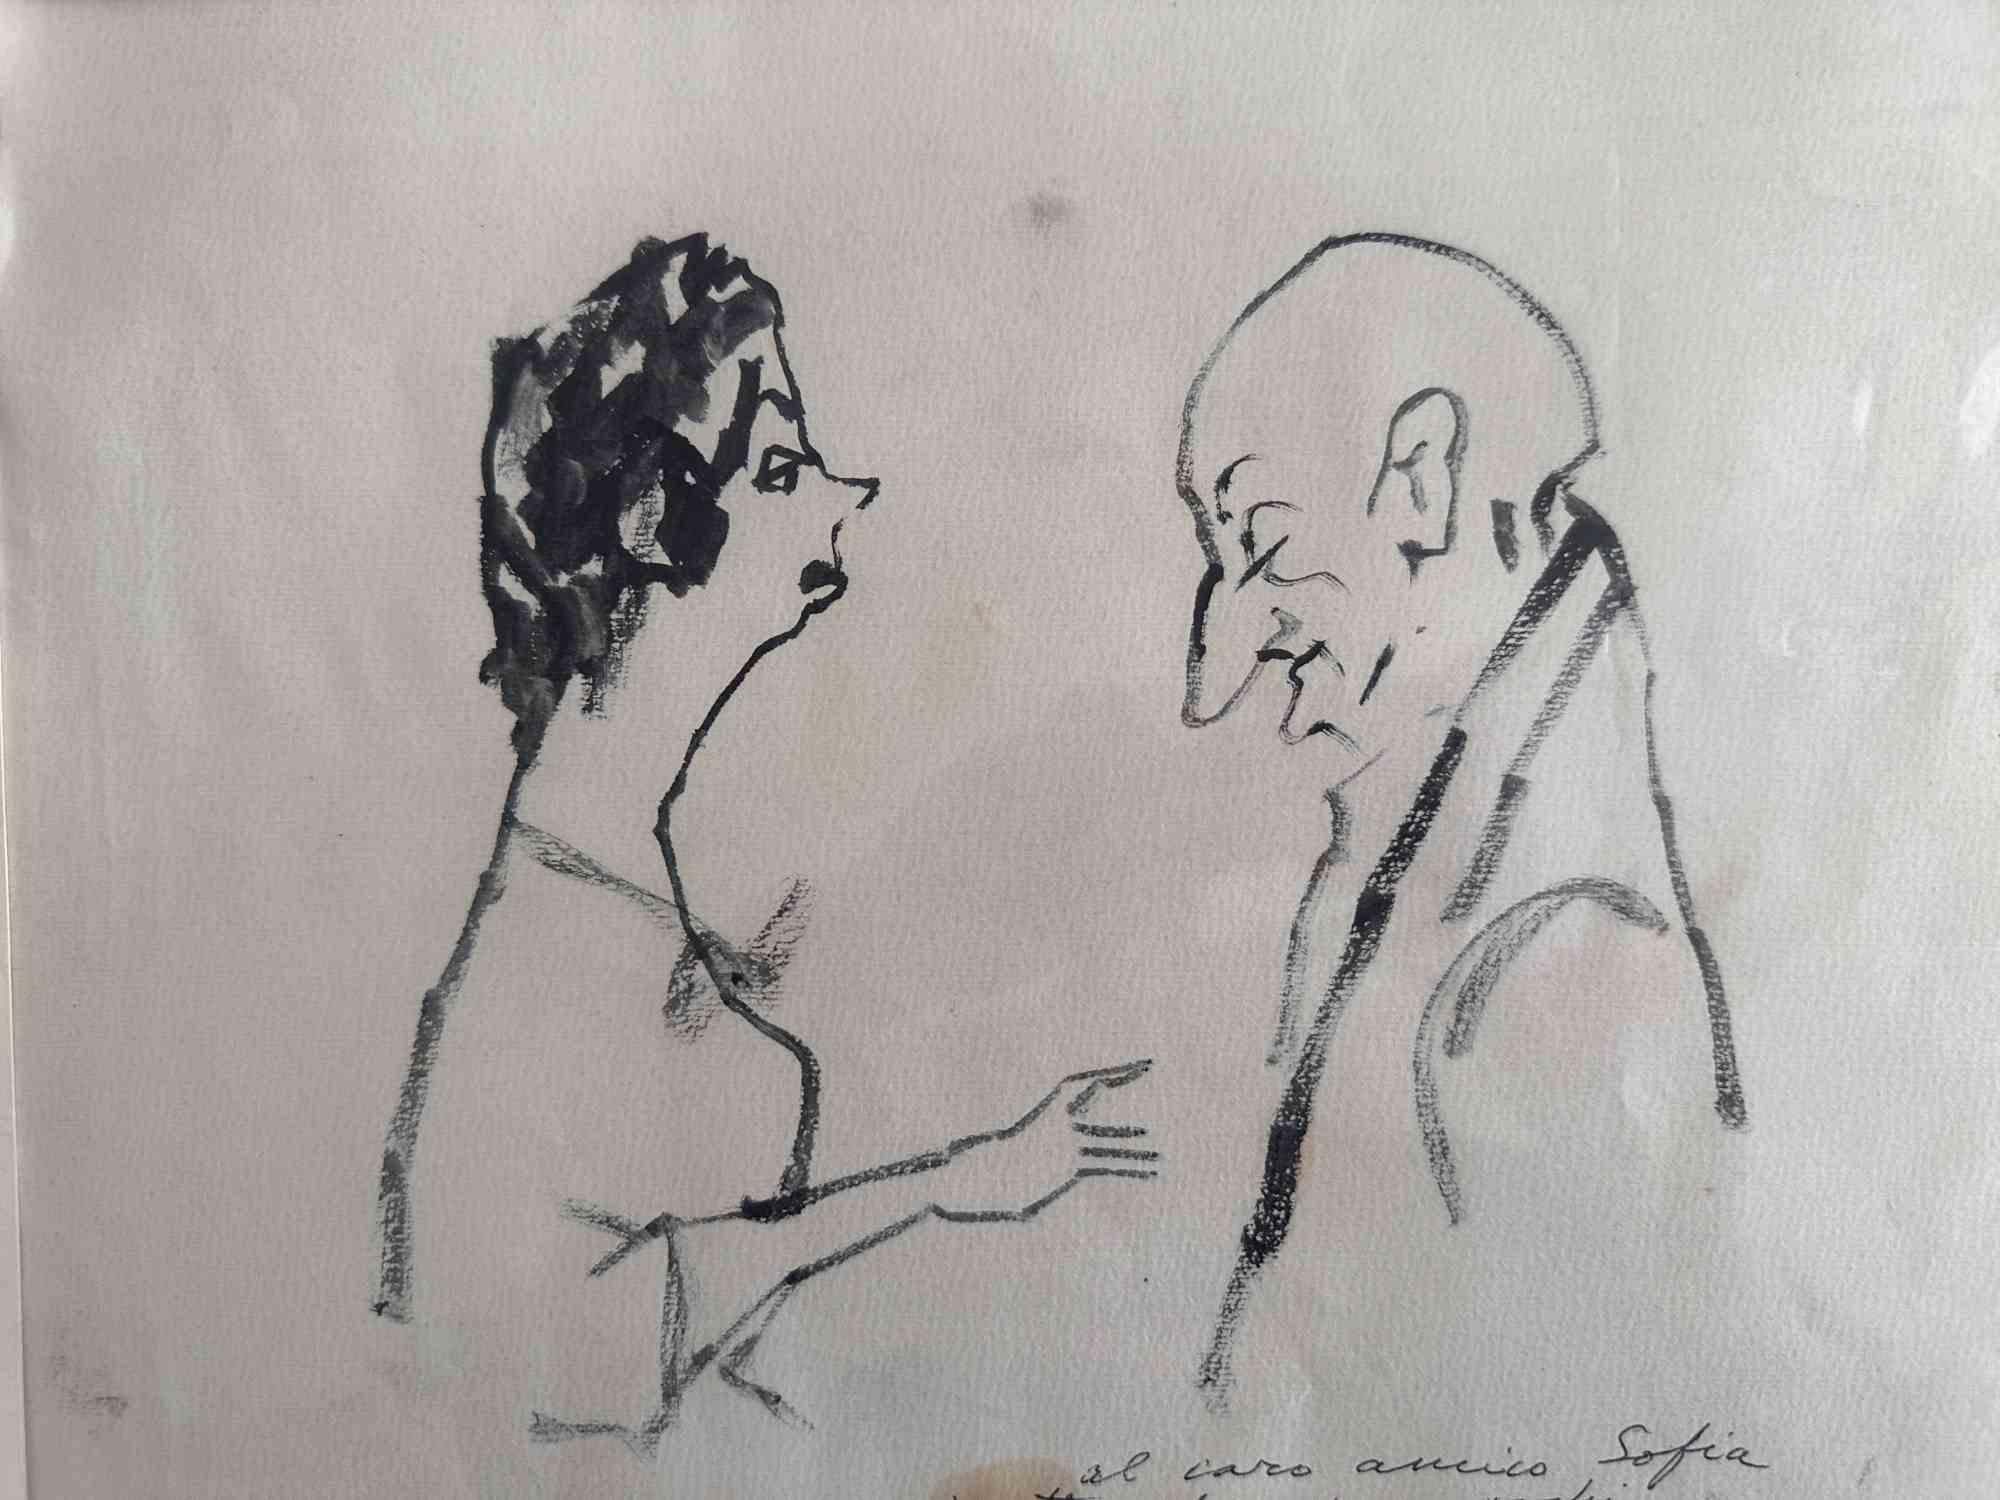 Rough Conversation ist eine Zeichnung, die von (1924-1989) in den 1960er Jahren realisiert wurde.

Handsigniert und Corrado Sofia gewidmet.

Guter Zustand mit leichten Stockflecken und Falten.

Mino Maccari (Siena, 1924-Rom, 16. Juni 1989) war ein